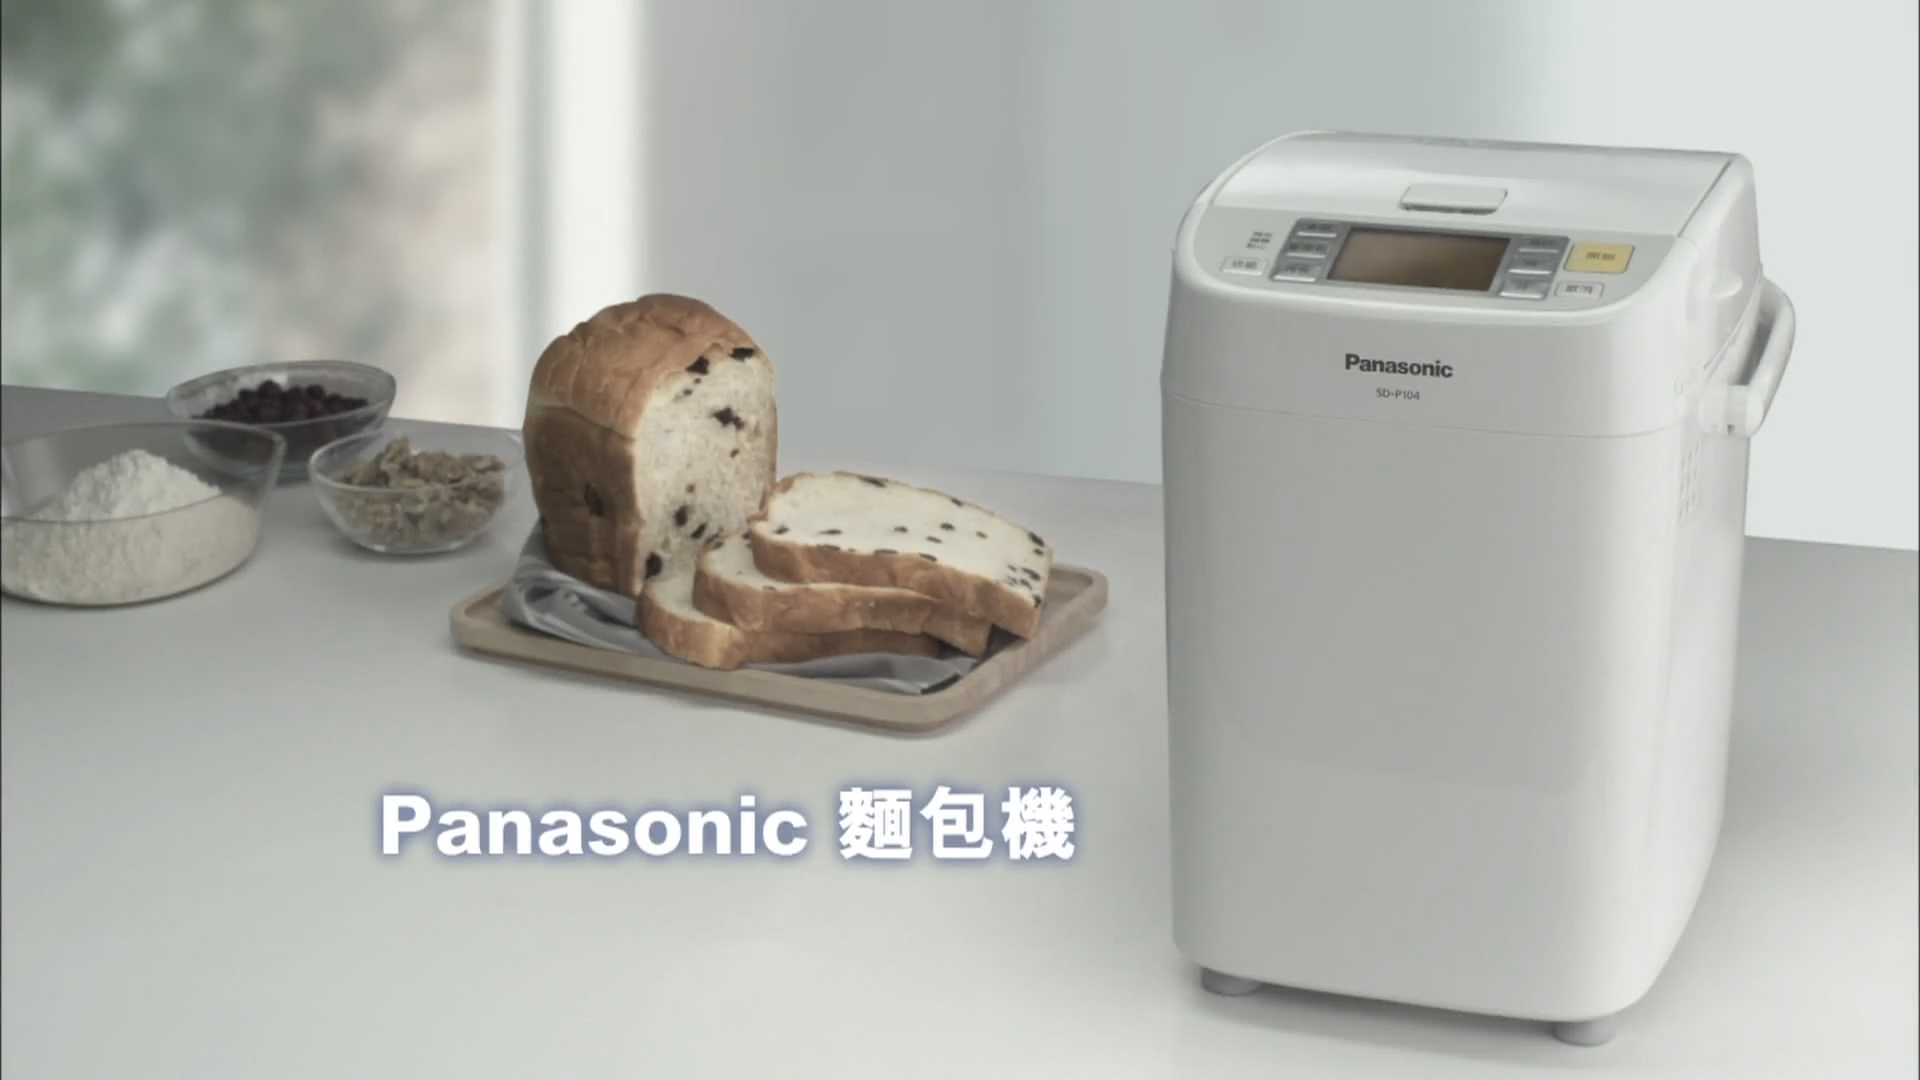 松下姚珏Panasonic 面包机广告